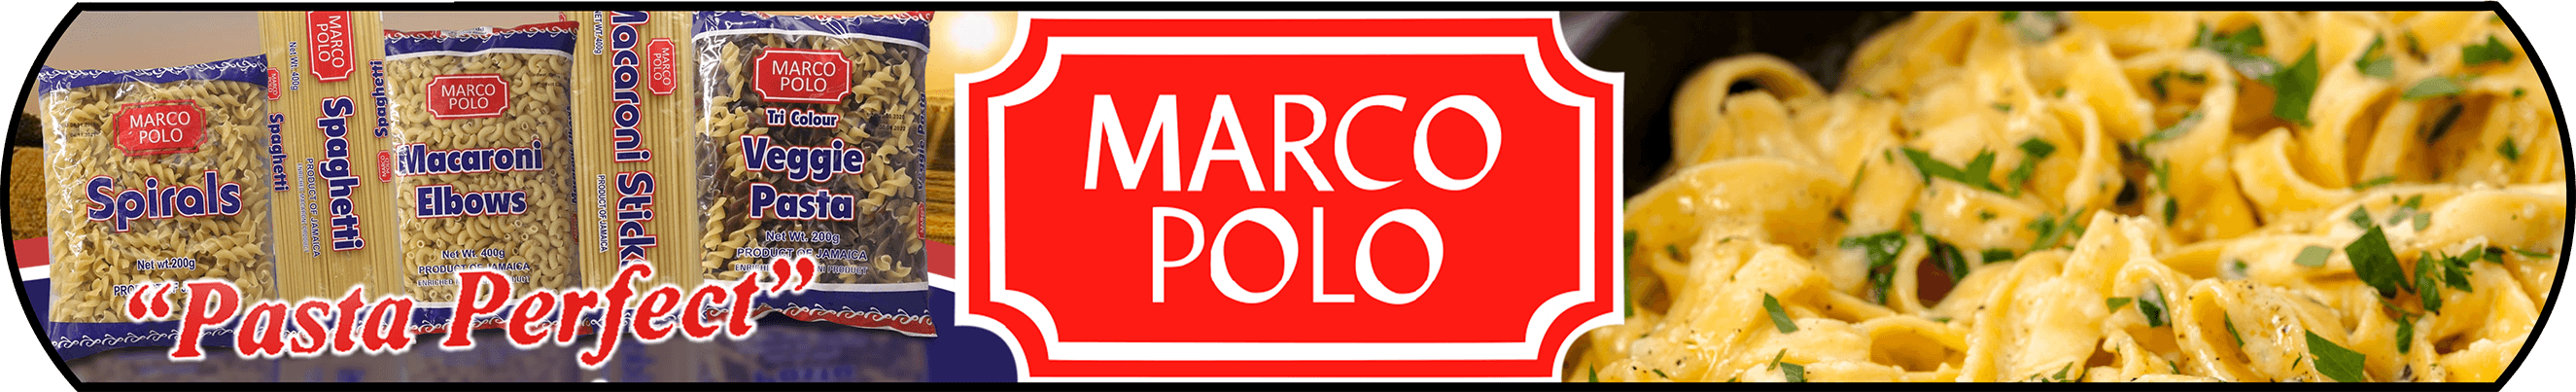 Marco Polo Banner